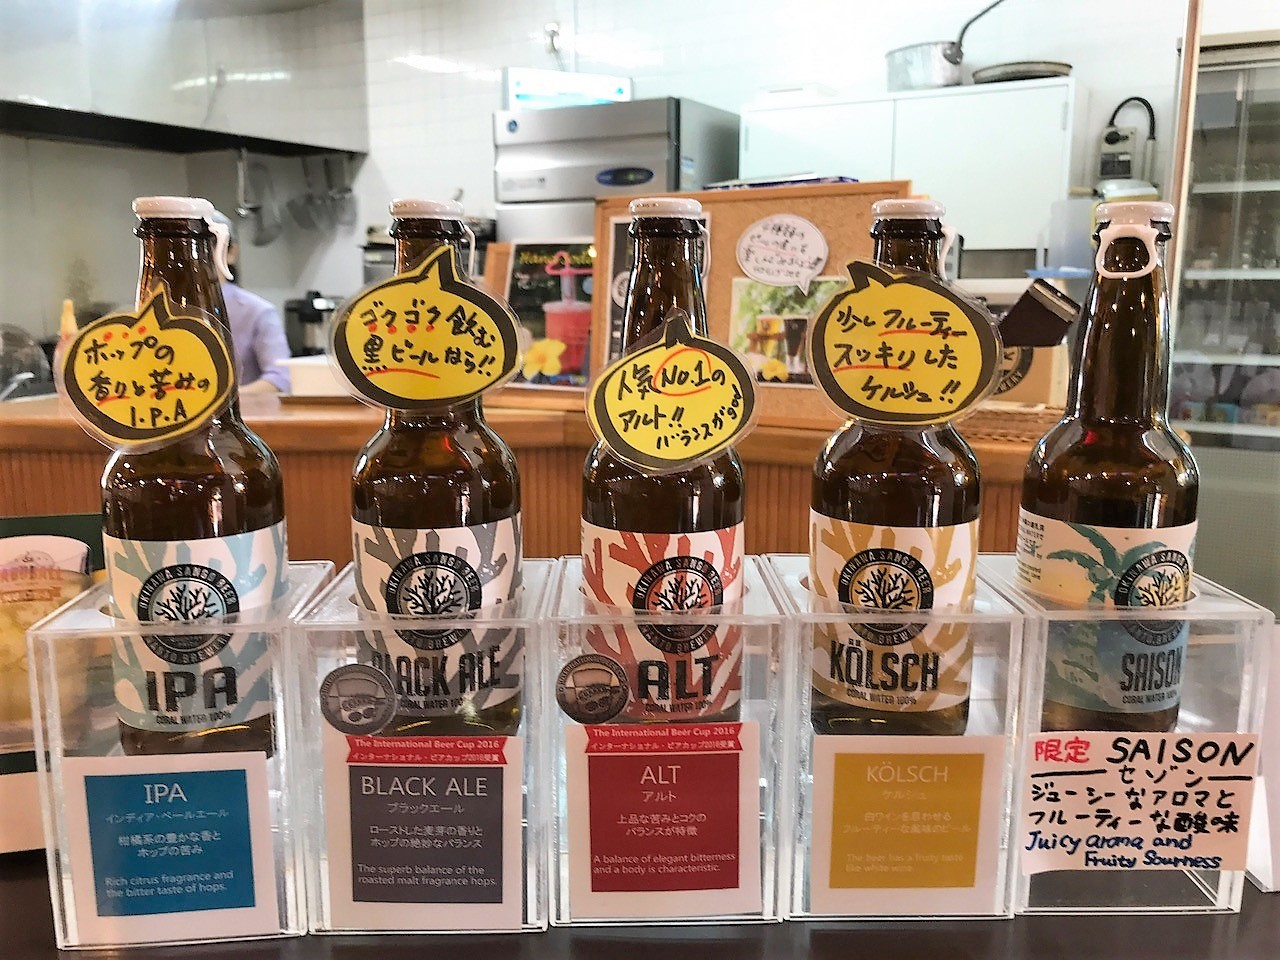 おきなわワールドの酒造所 地ビール と沖縄地酒 ハブ酒 沖縄リピート